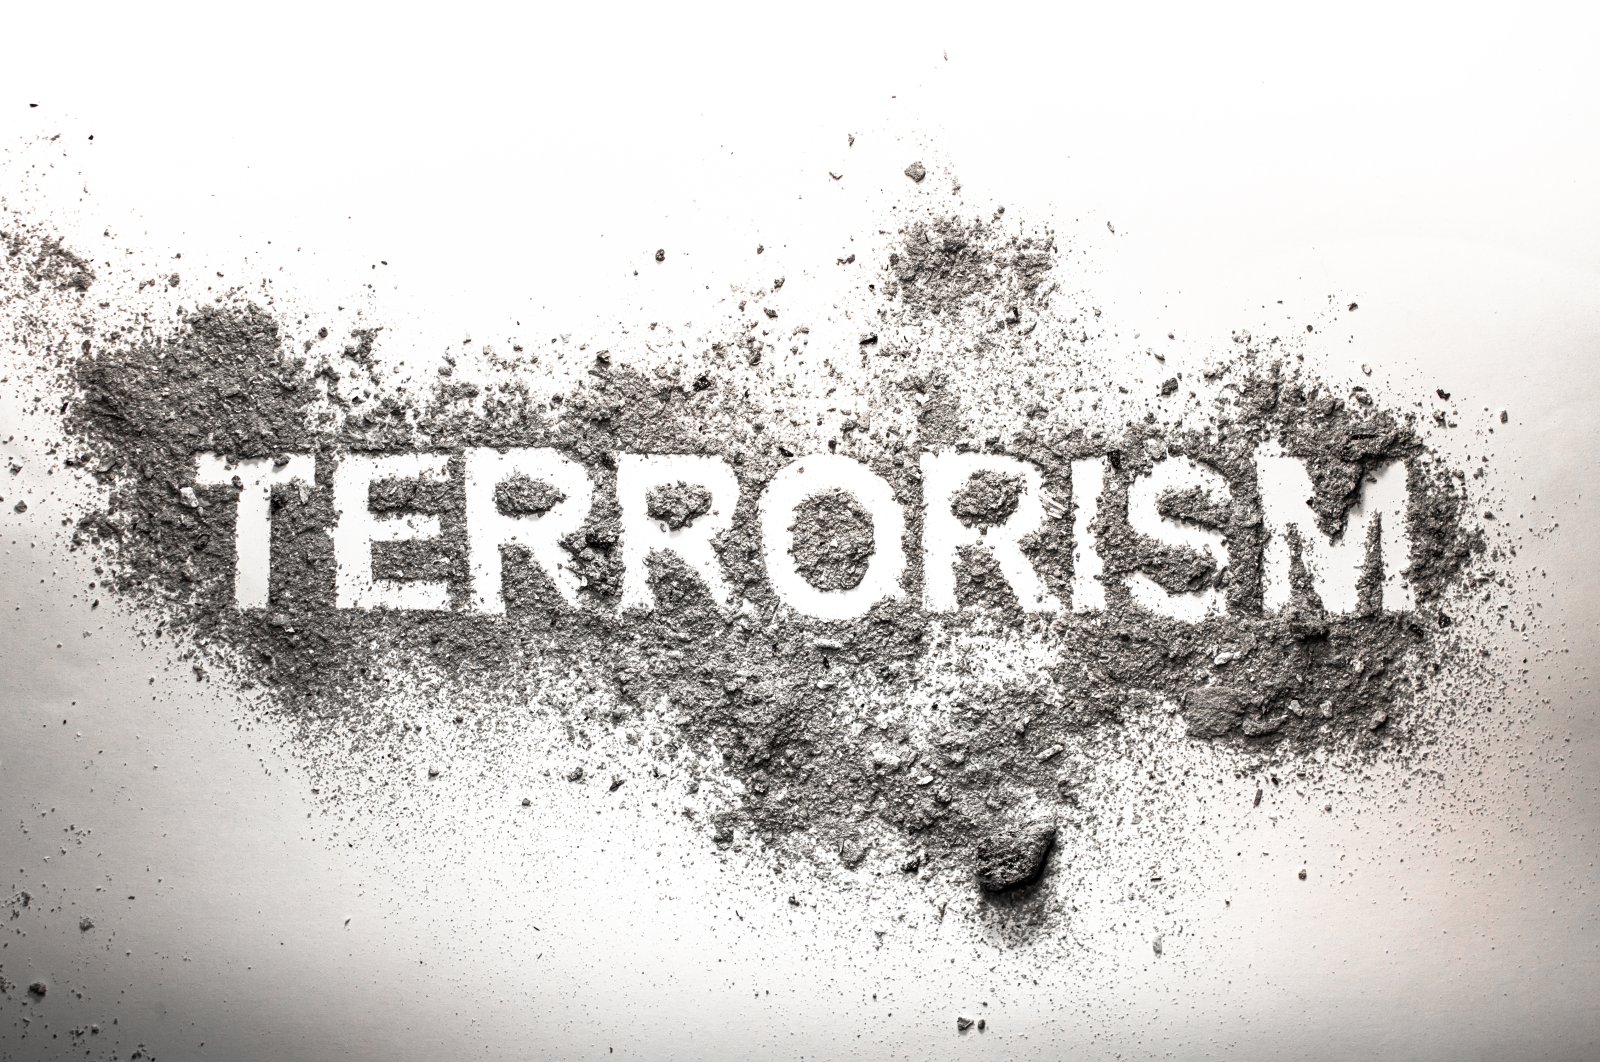 Mendefinisikan ulang terorisme dengan memasukkan pihak ketiga